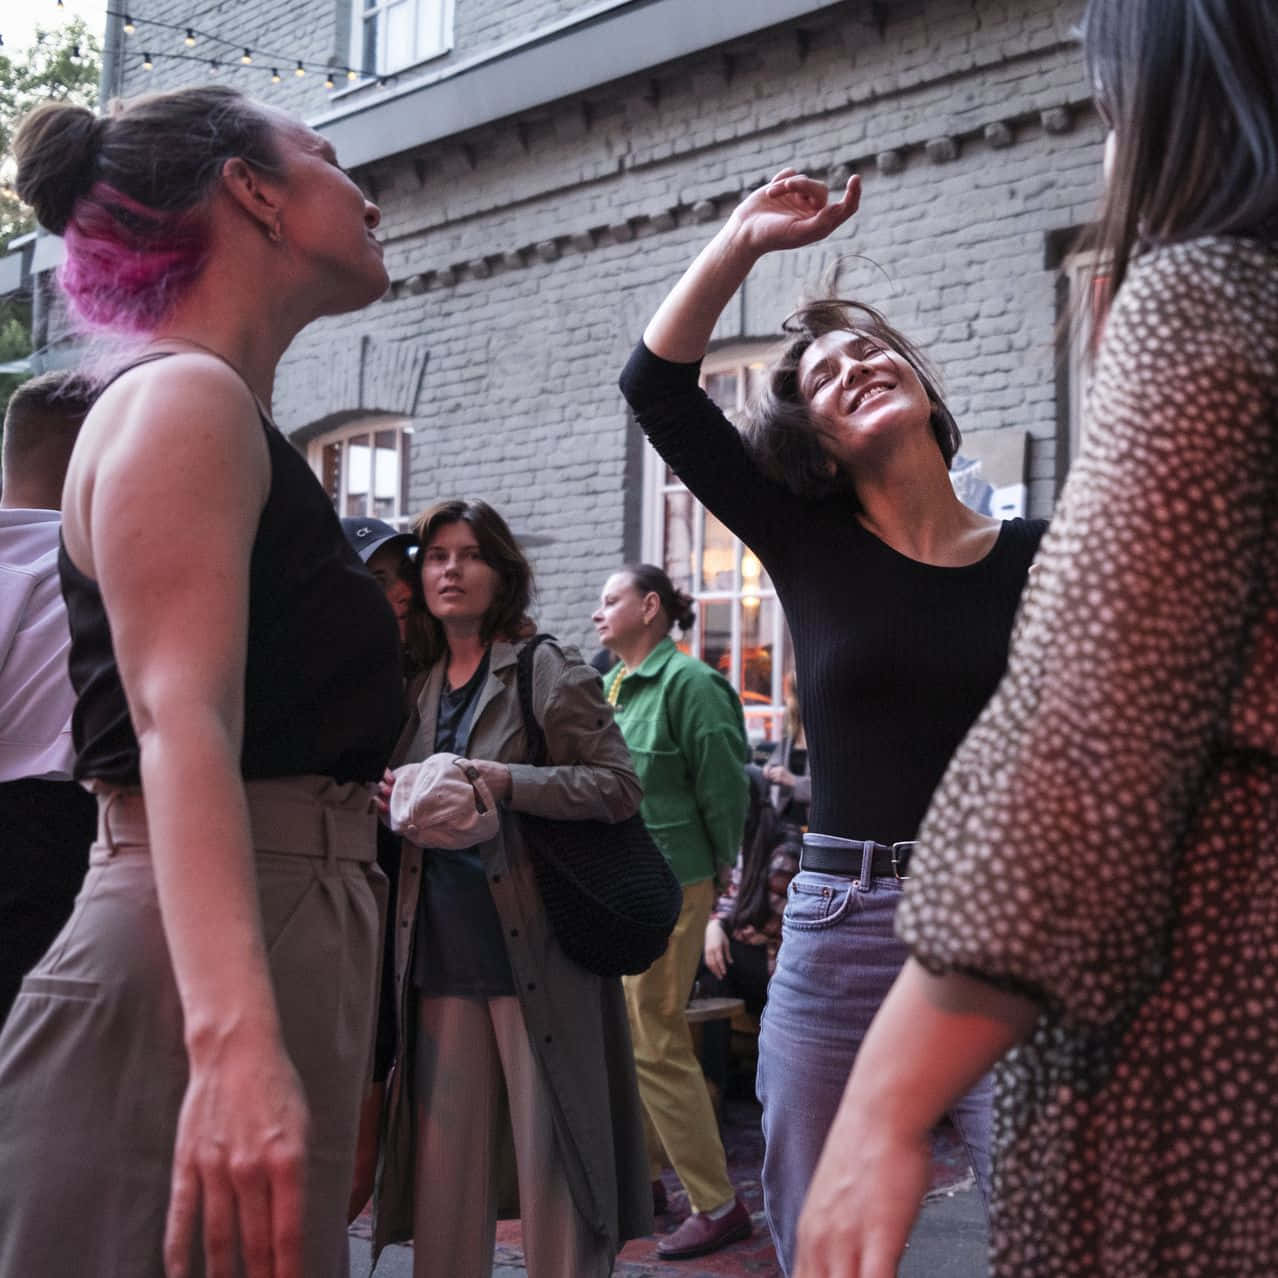 Ungrupo De Mujeres Está Bailando En La Calle.